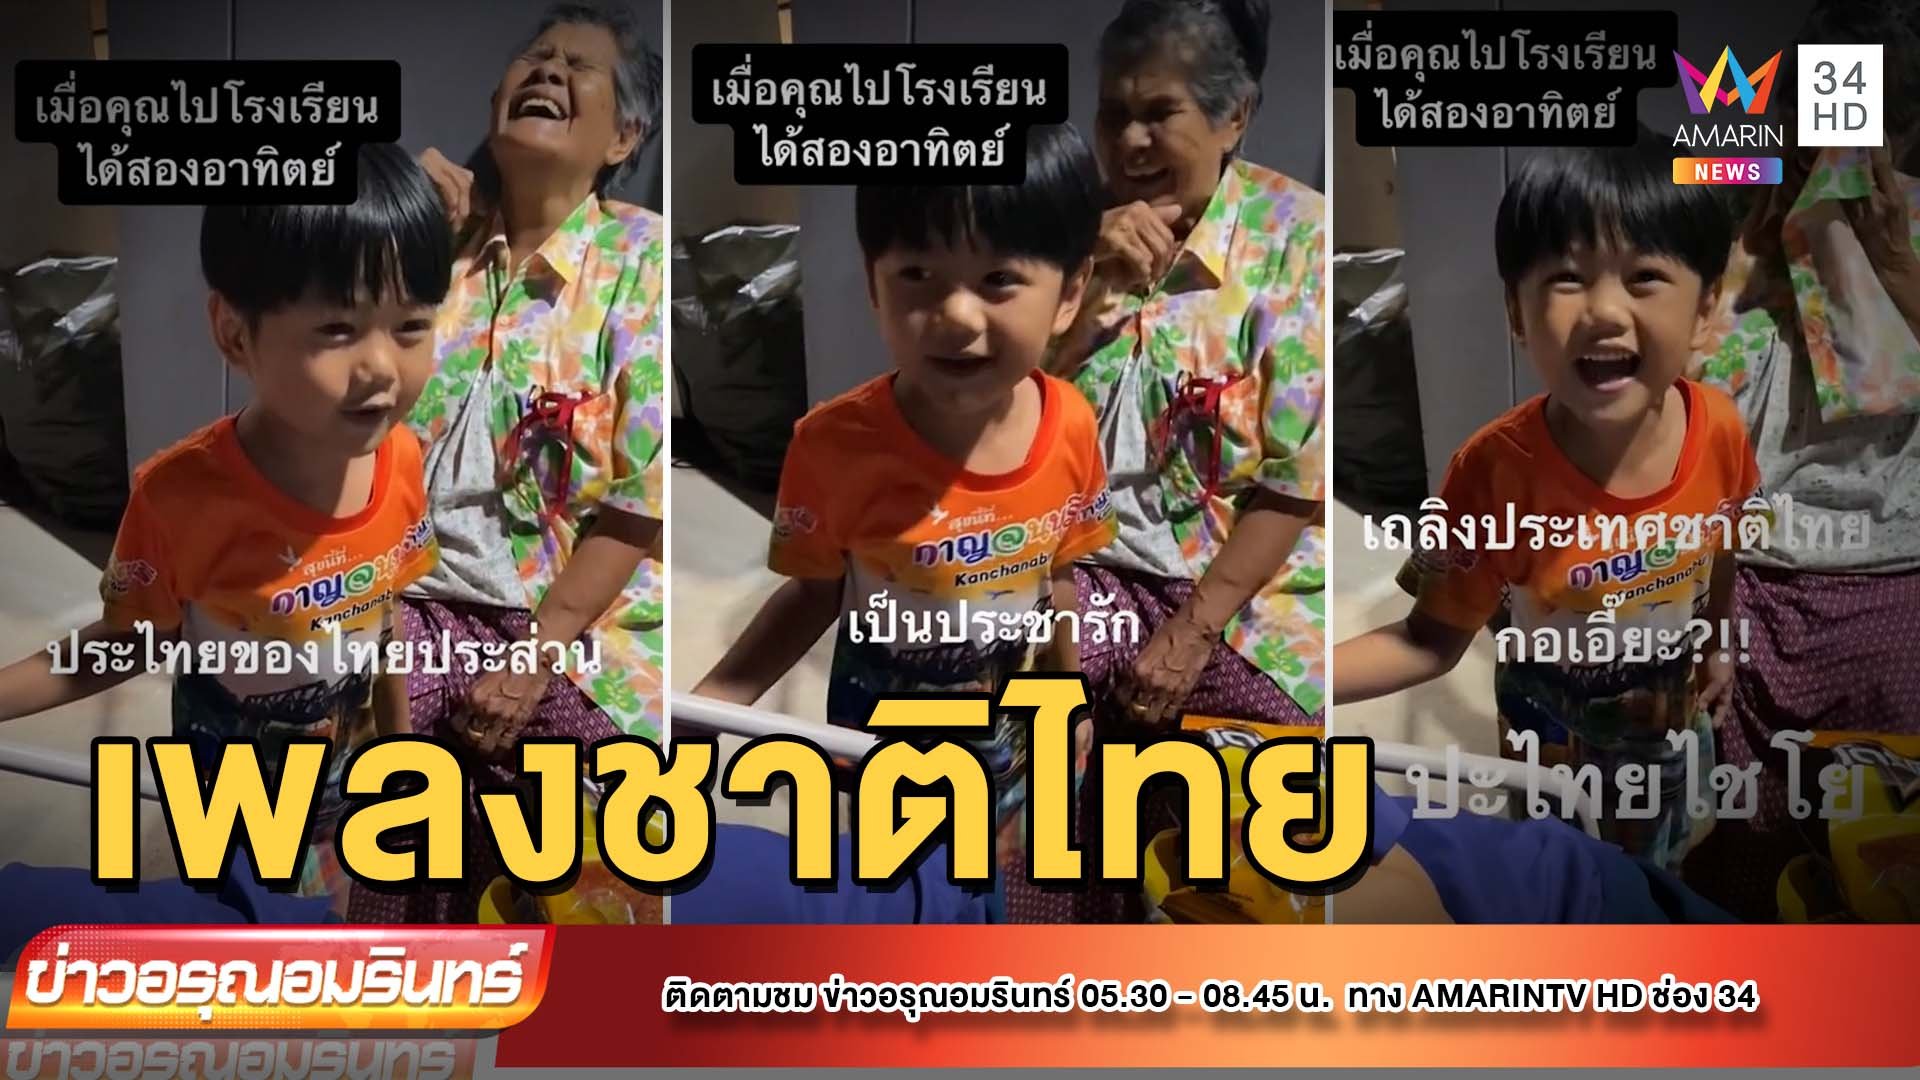 เด็กน้อยร้องเพลงชาติไทย ฟังแล้วฮาครืนทั้งวัน | ข่าวอรุณอมรินทร์ | 10 มิ.ย. 65 | AMARIN TVHD34